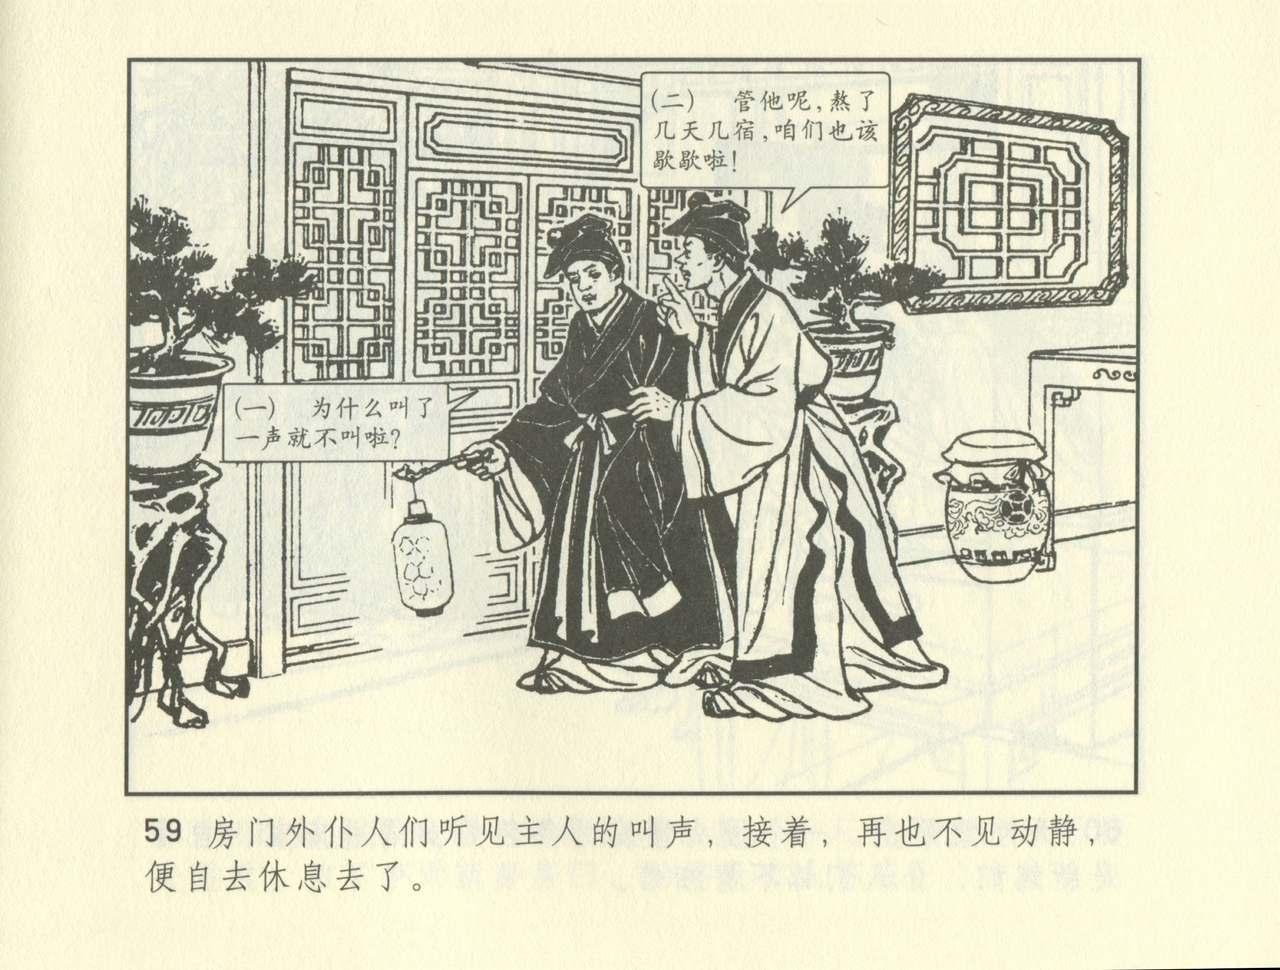 聊斋志异 张玮等绘 天津人民美术出版社 卷二十一 ~ 三十 268